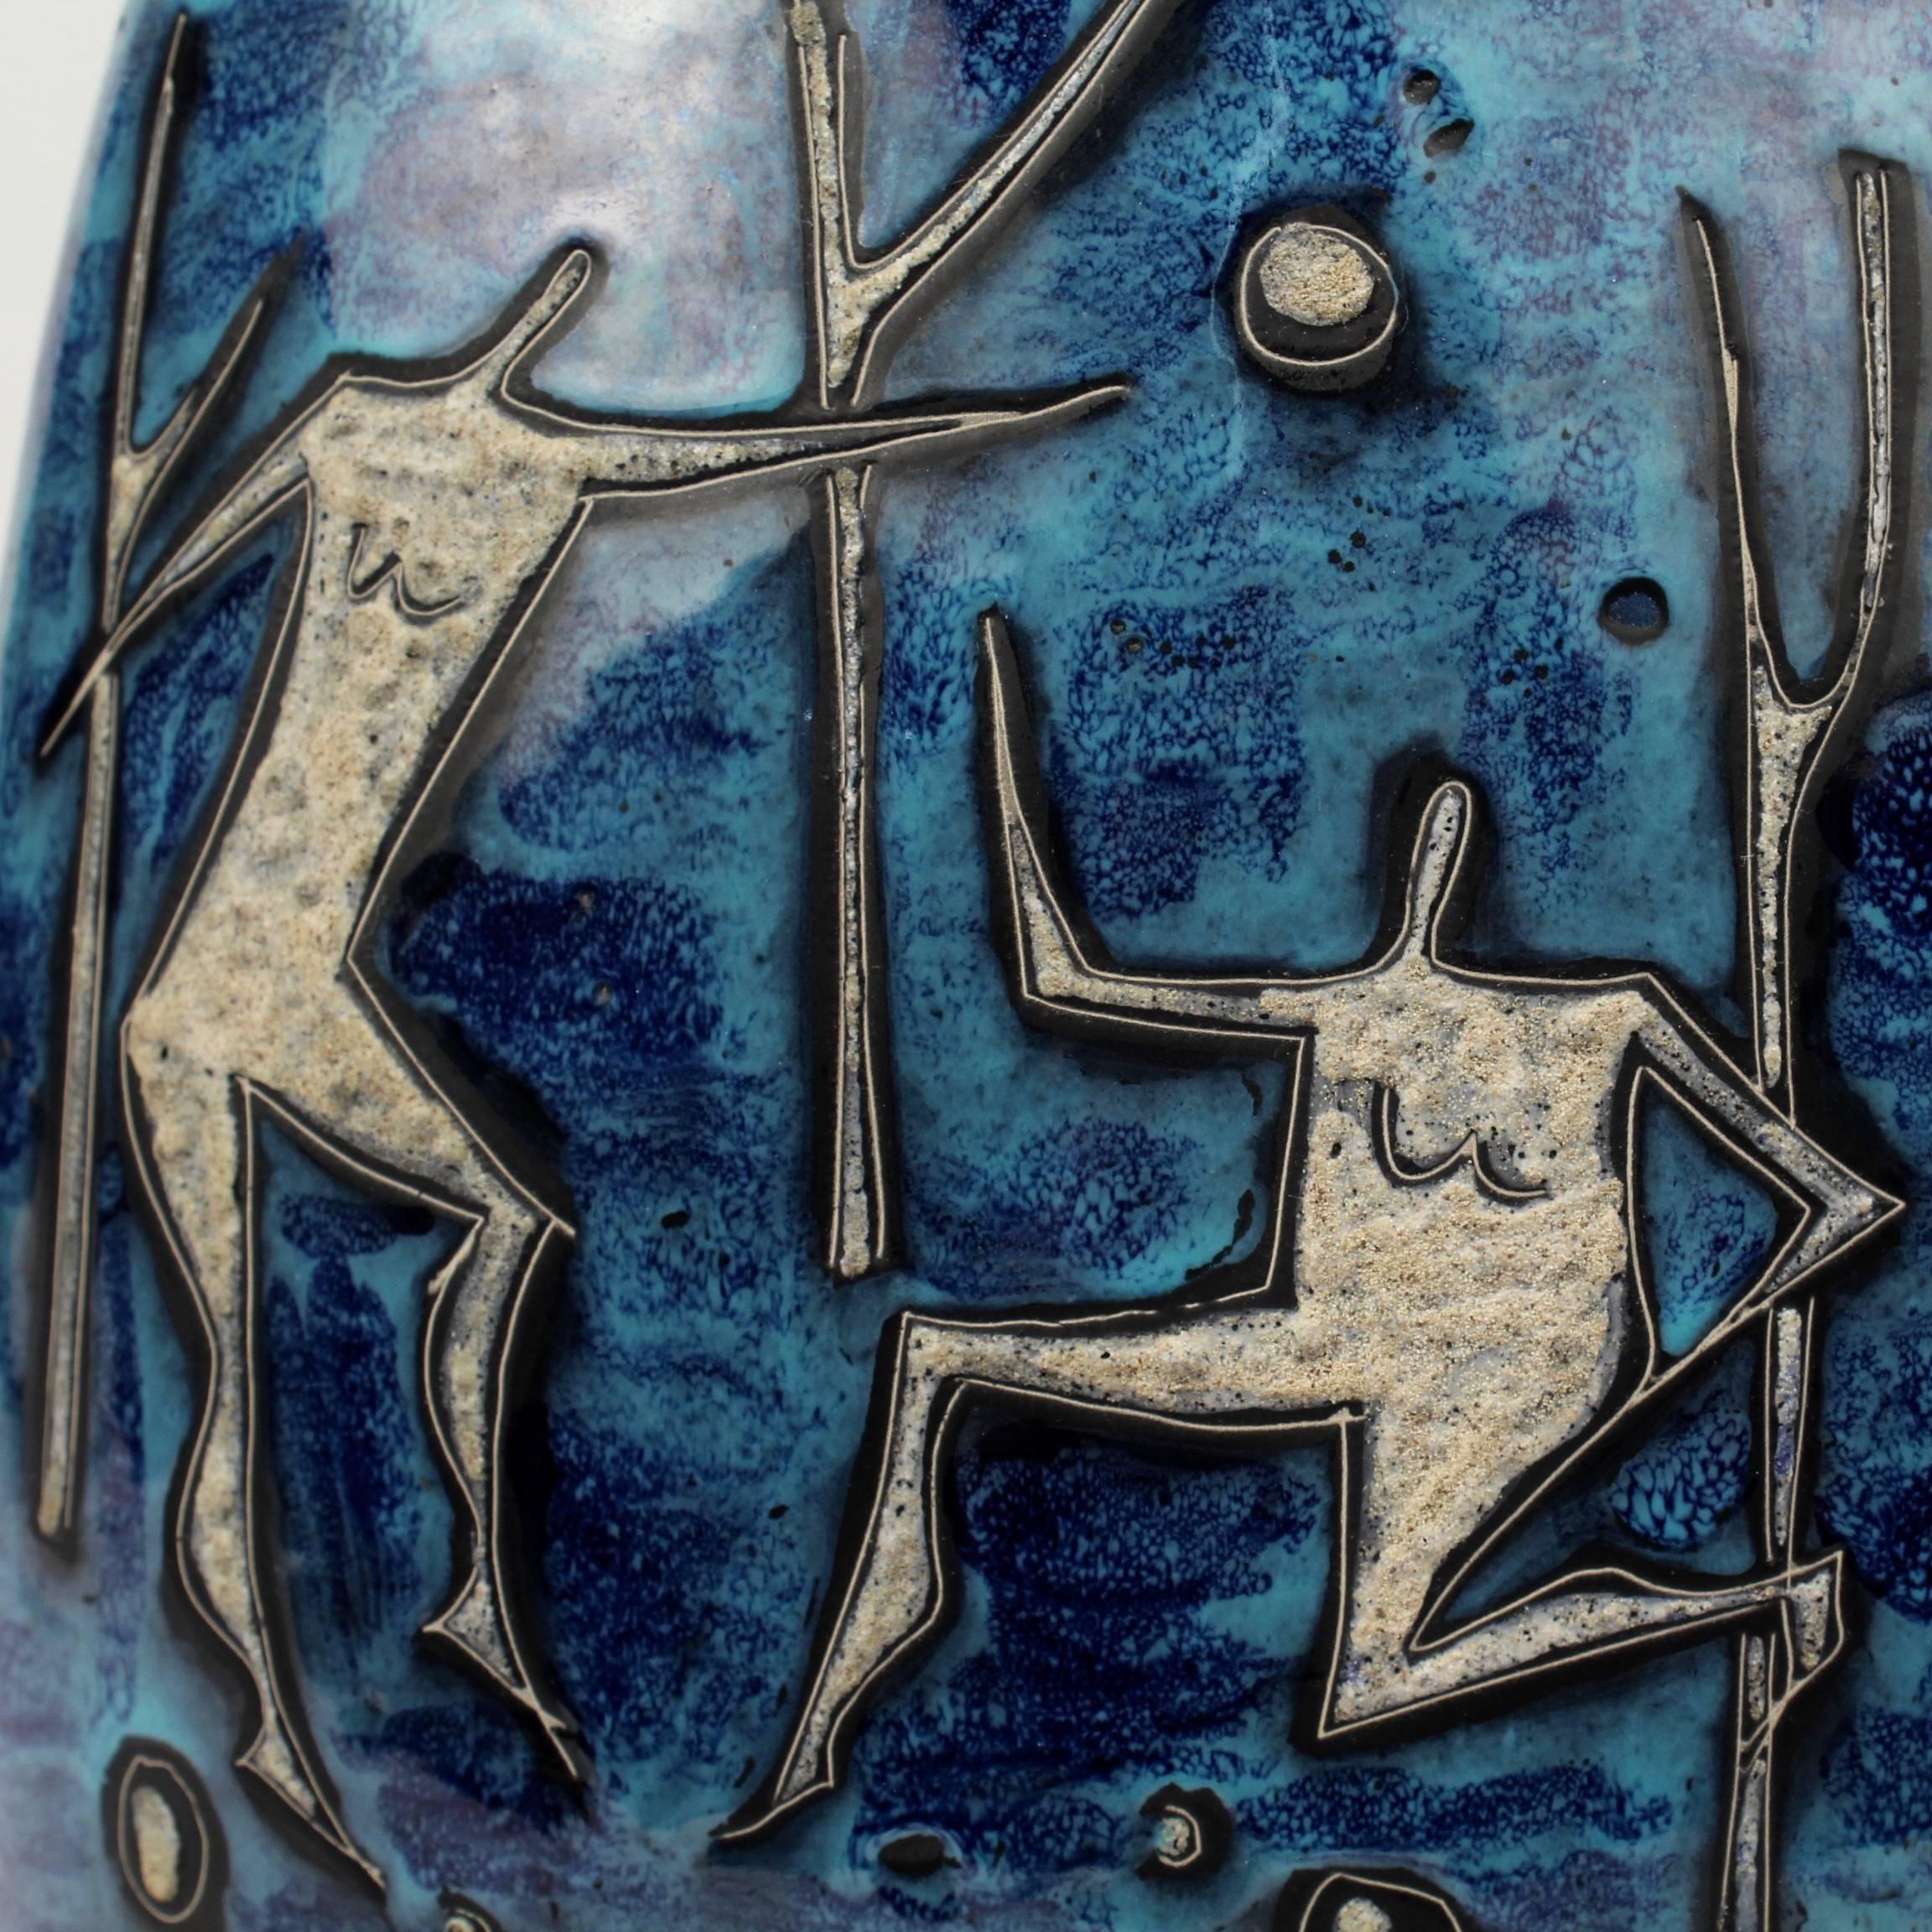 Eine fantastische Vase aus italienischer Keramik der Moderne von Gianni Tosin.

Mit gesprenkelter blauer Glasur im Gambone-Stil und erhabenem cremefarbenem 